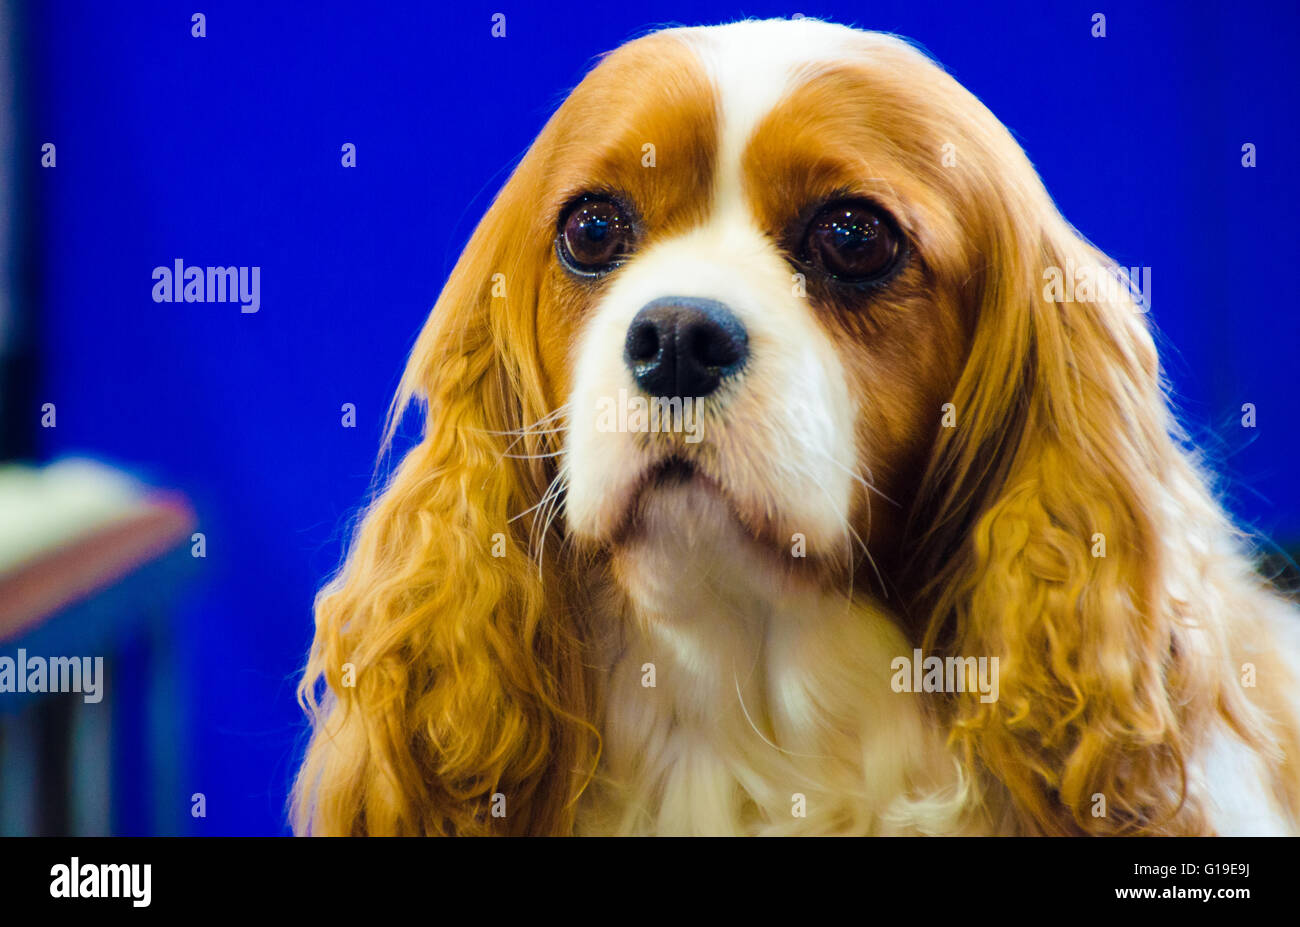 Sydney, Australie - 15 août 2015 : Le Bilbo est l'hôte de la Sydney amoureux de chien Show. Cet événement a une grande variété de divertissement, d'éducation et d'informations sur les chiens. Banque D'Images